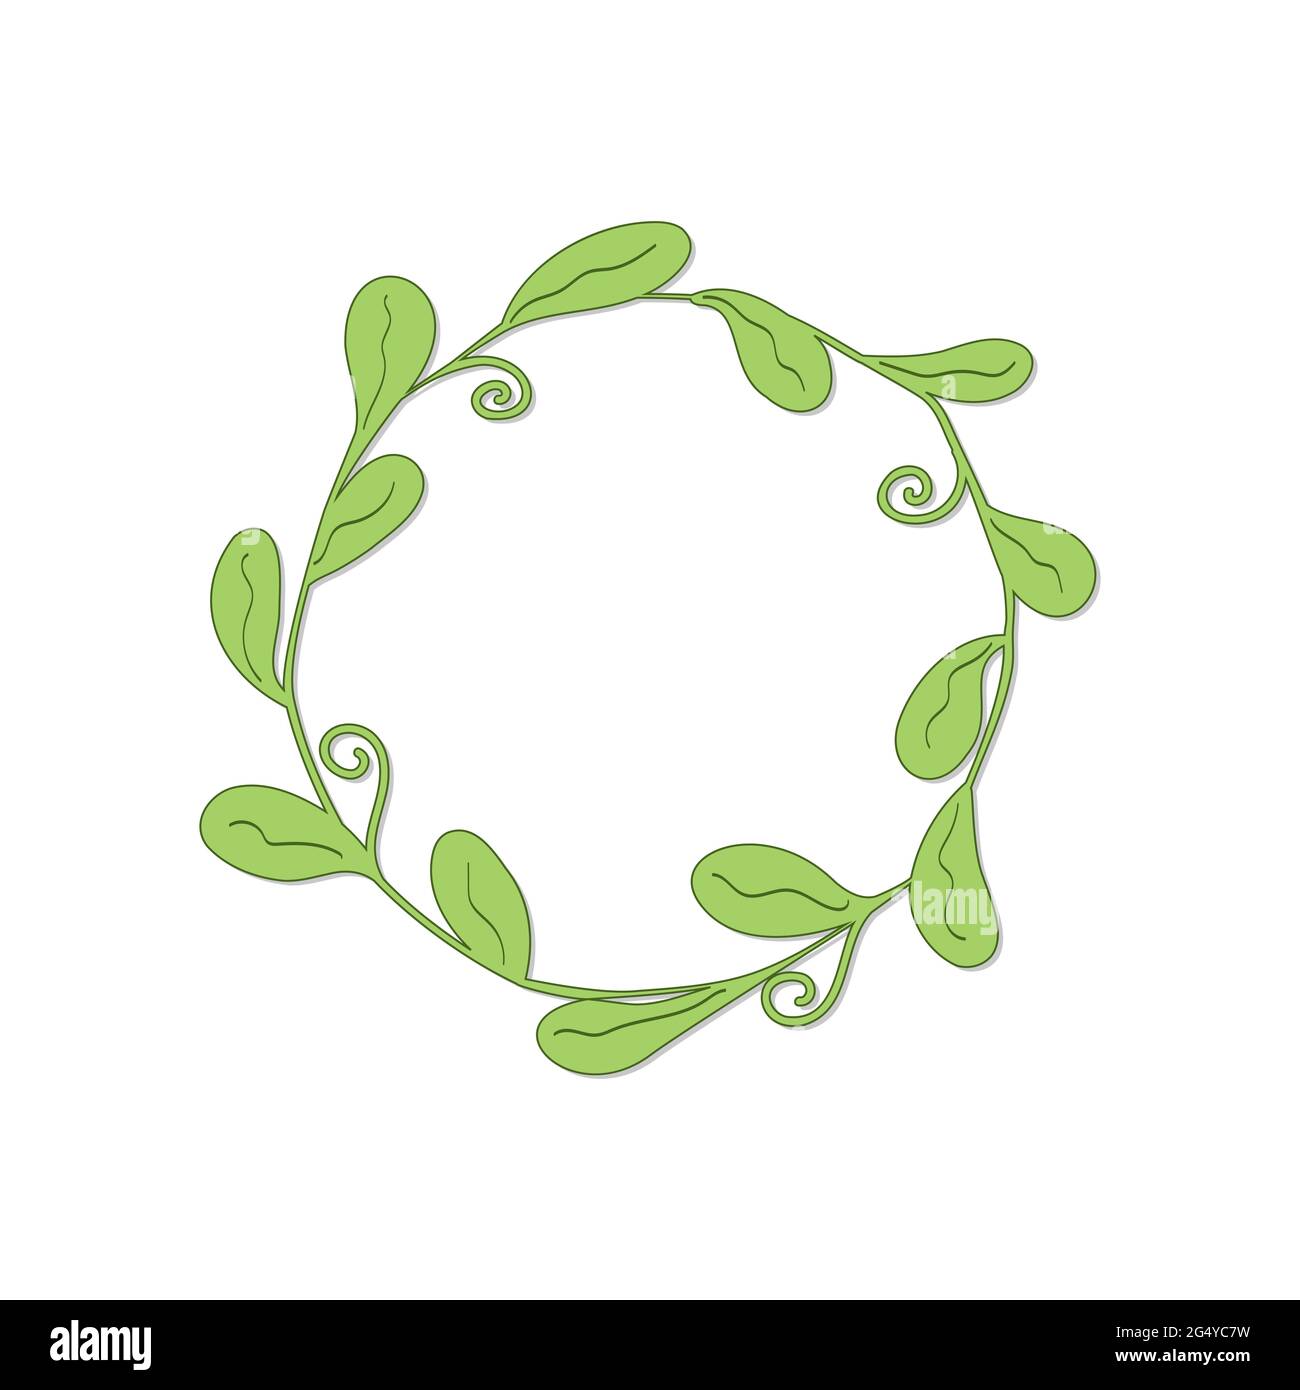 cornice rotonda disegnata con foglie ovali e ricci di colore verde chiaro con ombra su sfondo bianco Illustrazione Vettoriale